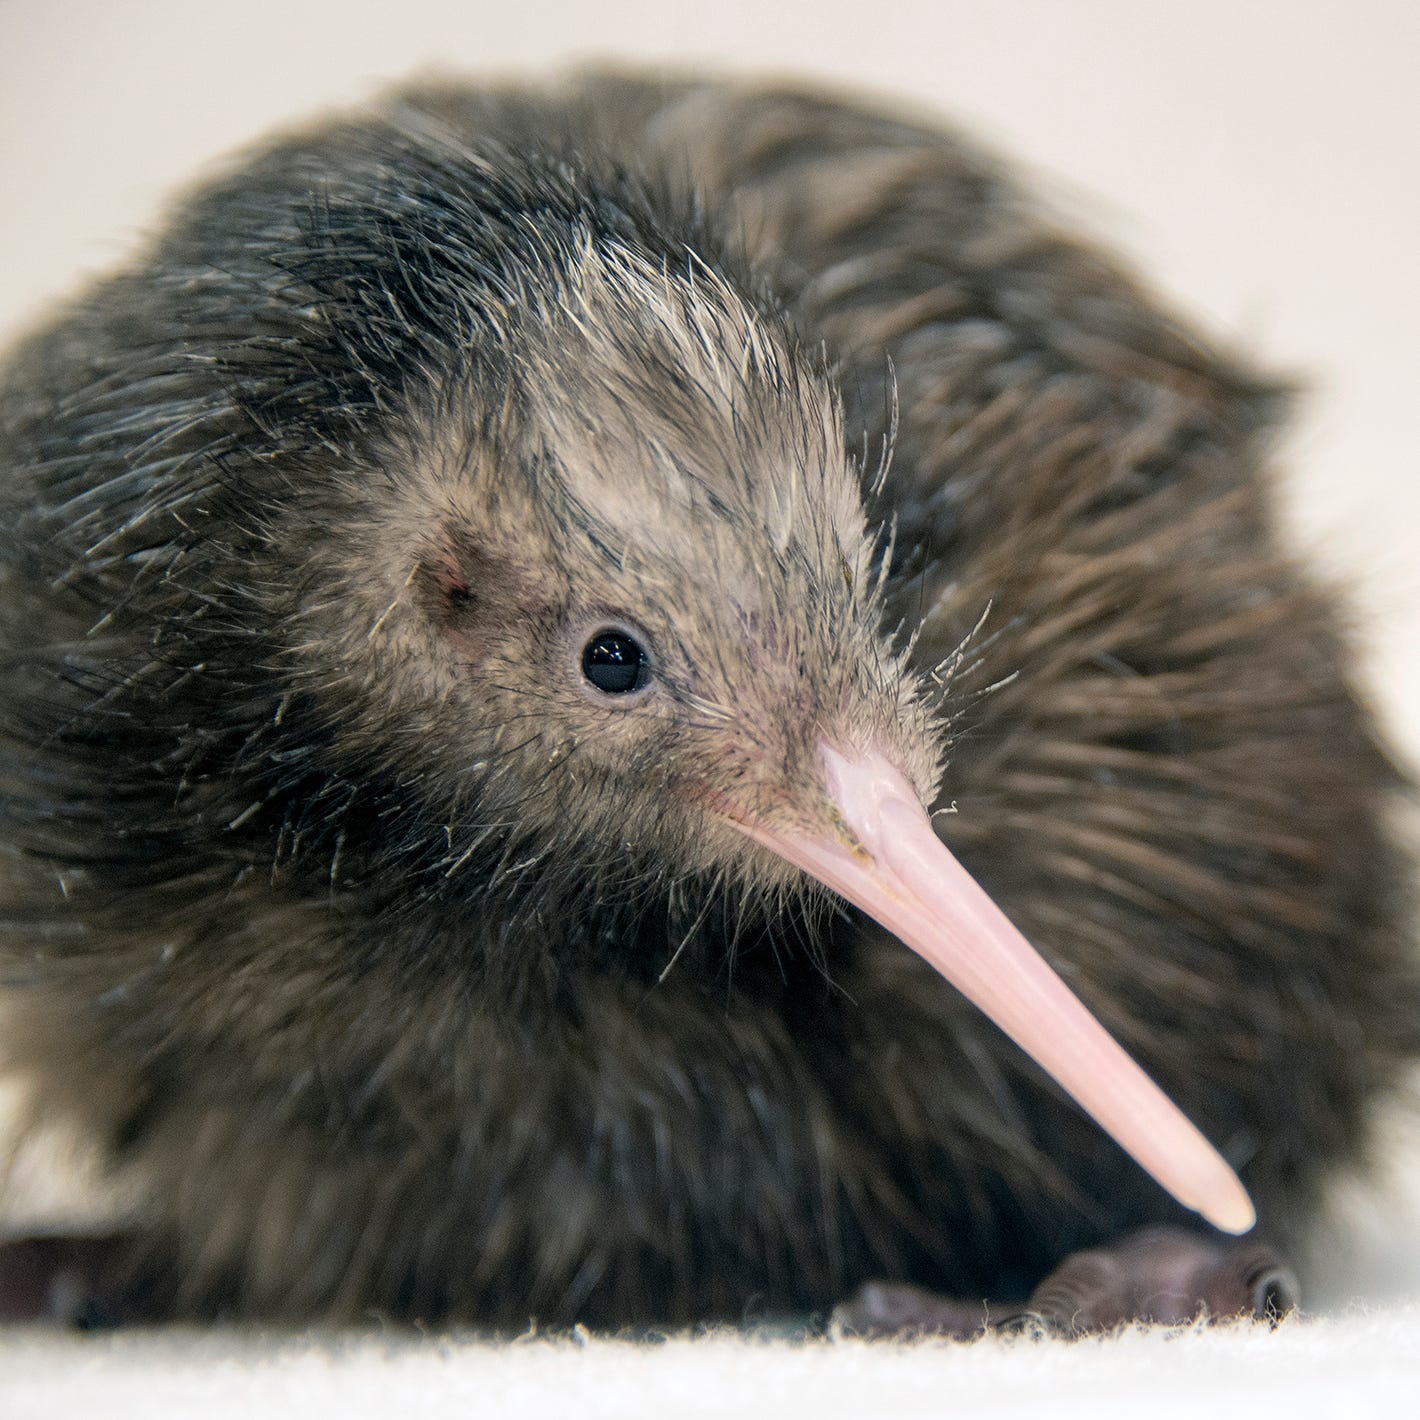 Zoo Miami has apologized for mistreating a kiwi bird.